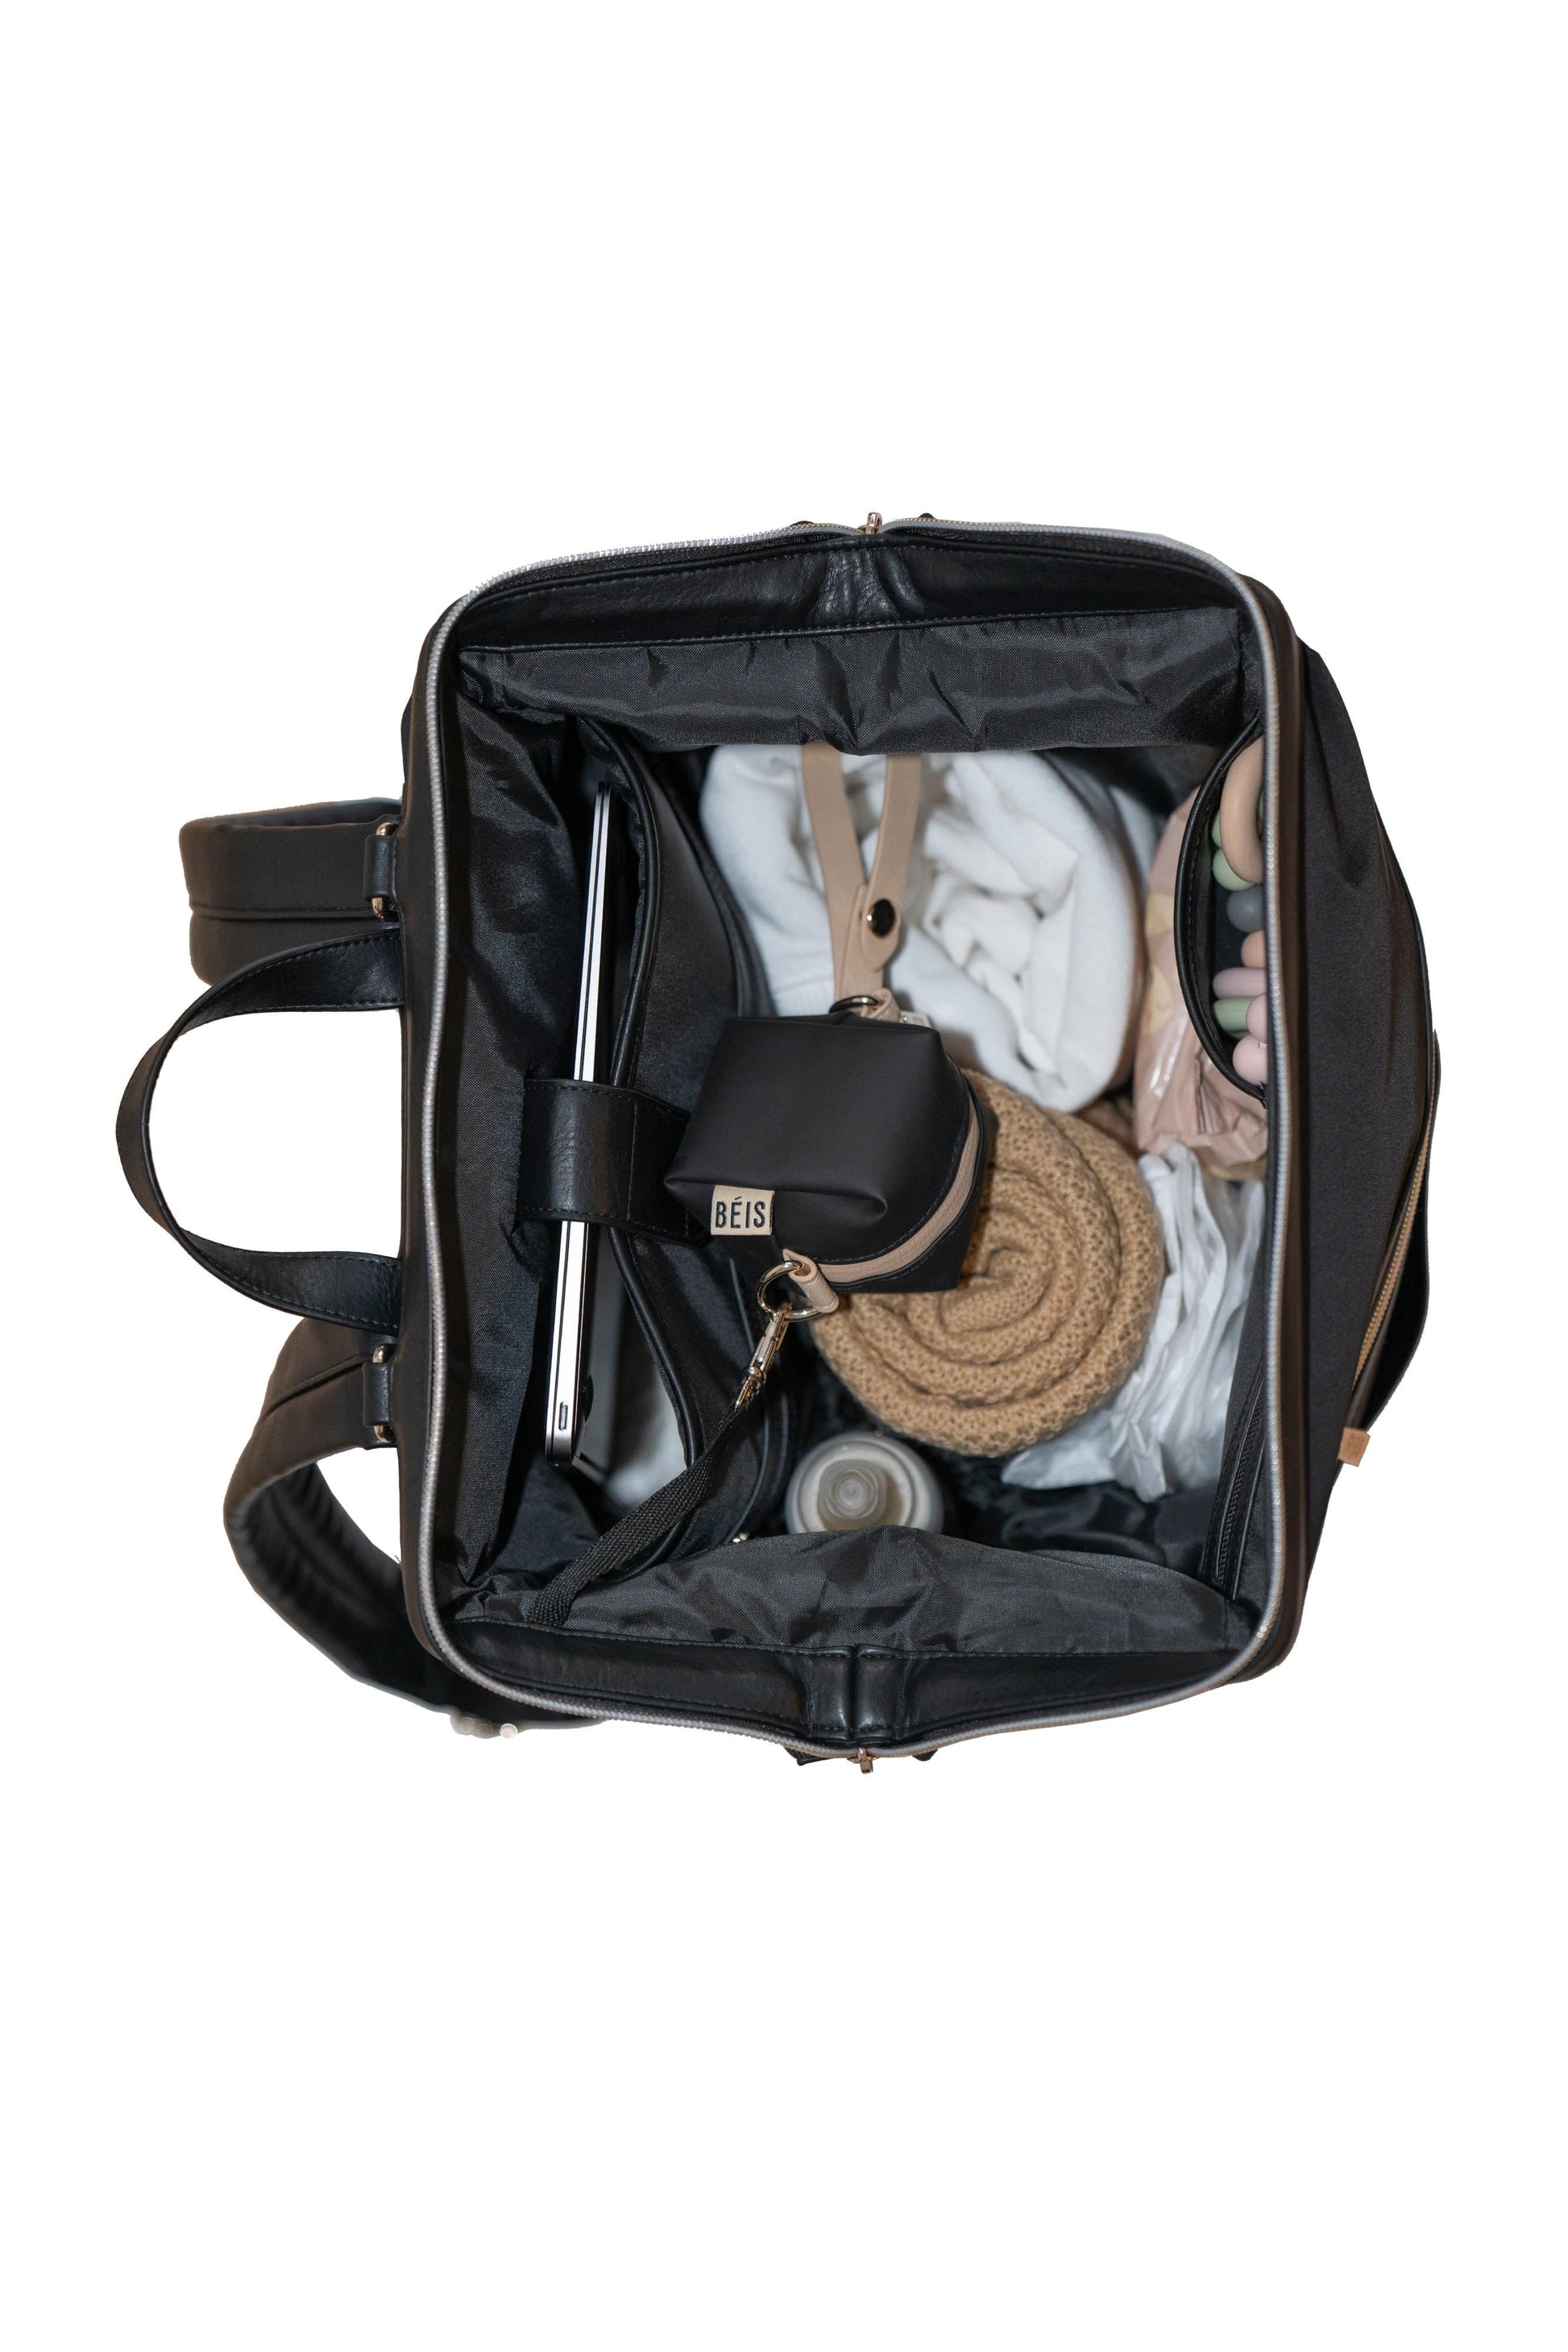 Béis The Backpack Diaper Bag in Black at Nordstrom